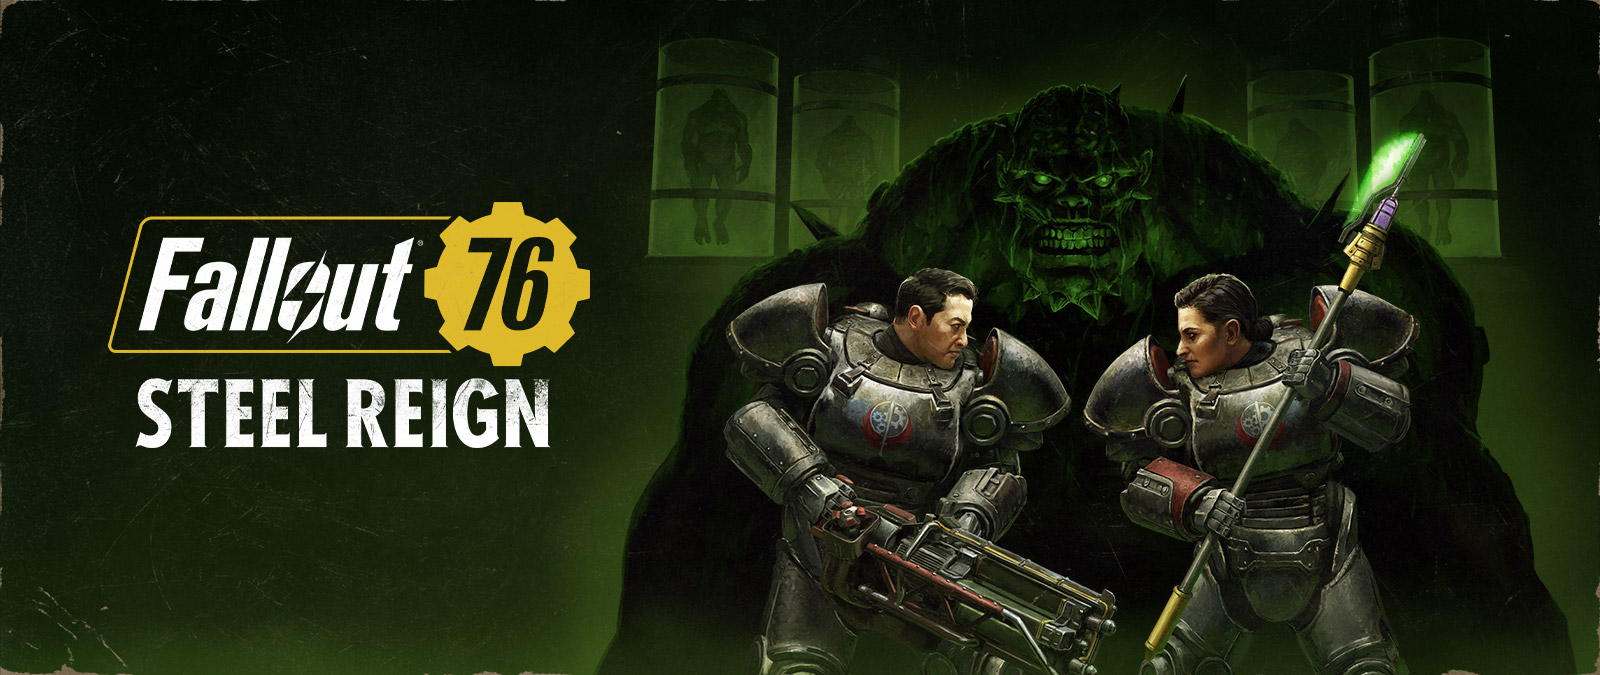 Fallout 76, Steel Reign, Duis personagens em fatos mecânicos enfrentam-se com um grande monstro no fundo.